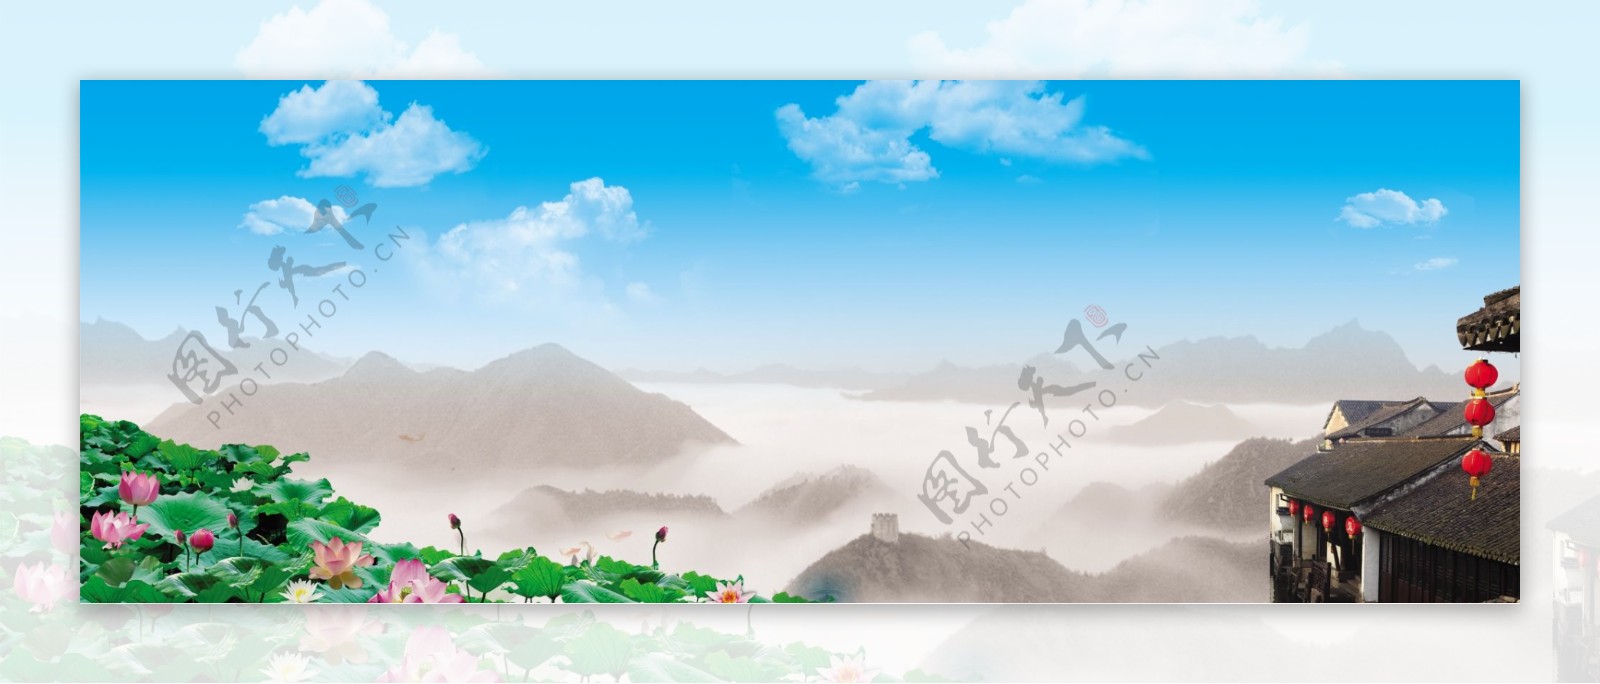 山峰古镇风景图片